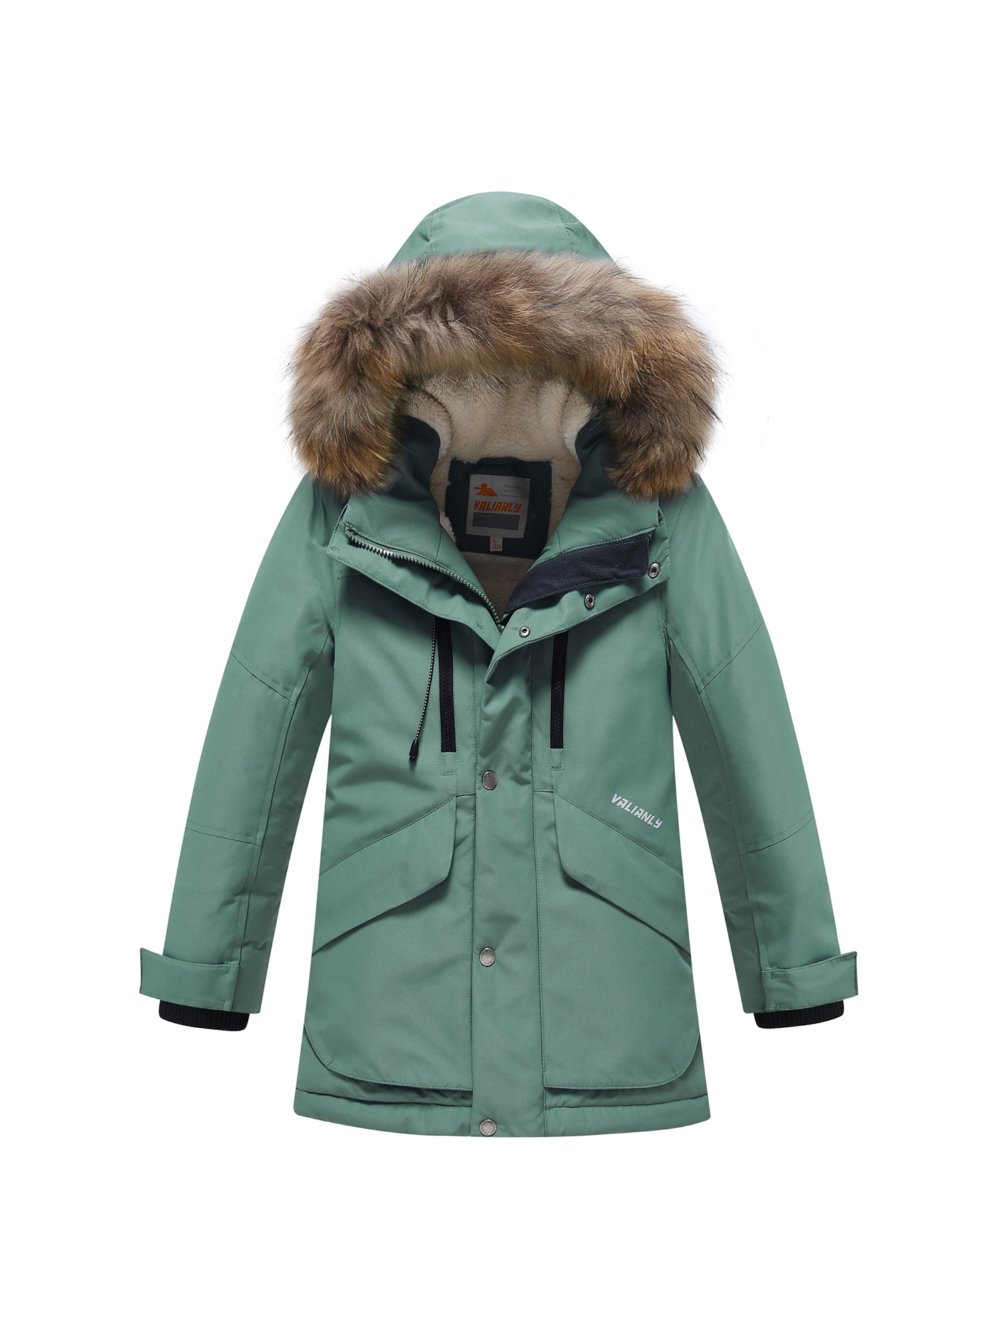 Купить куртку парку для мальчика оптом от производителя недорого в Москве 9339Z 1